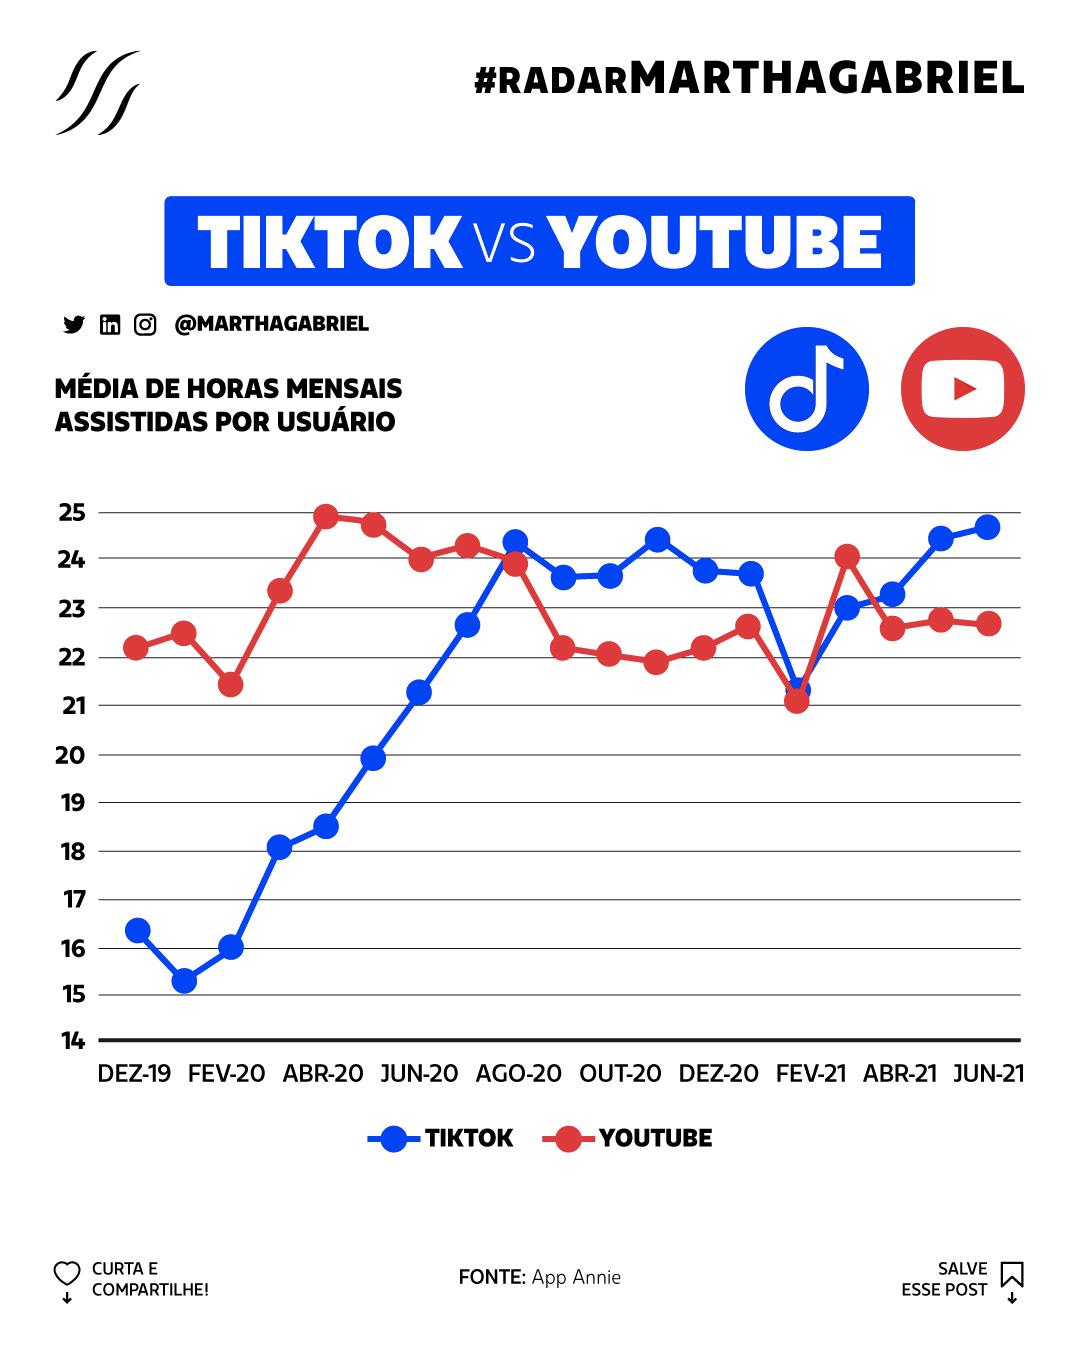 TikTok VS Youtube